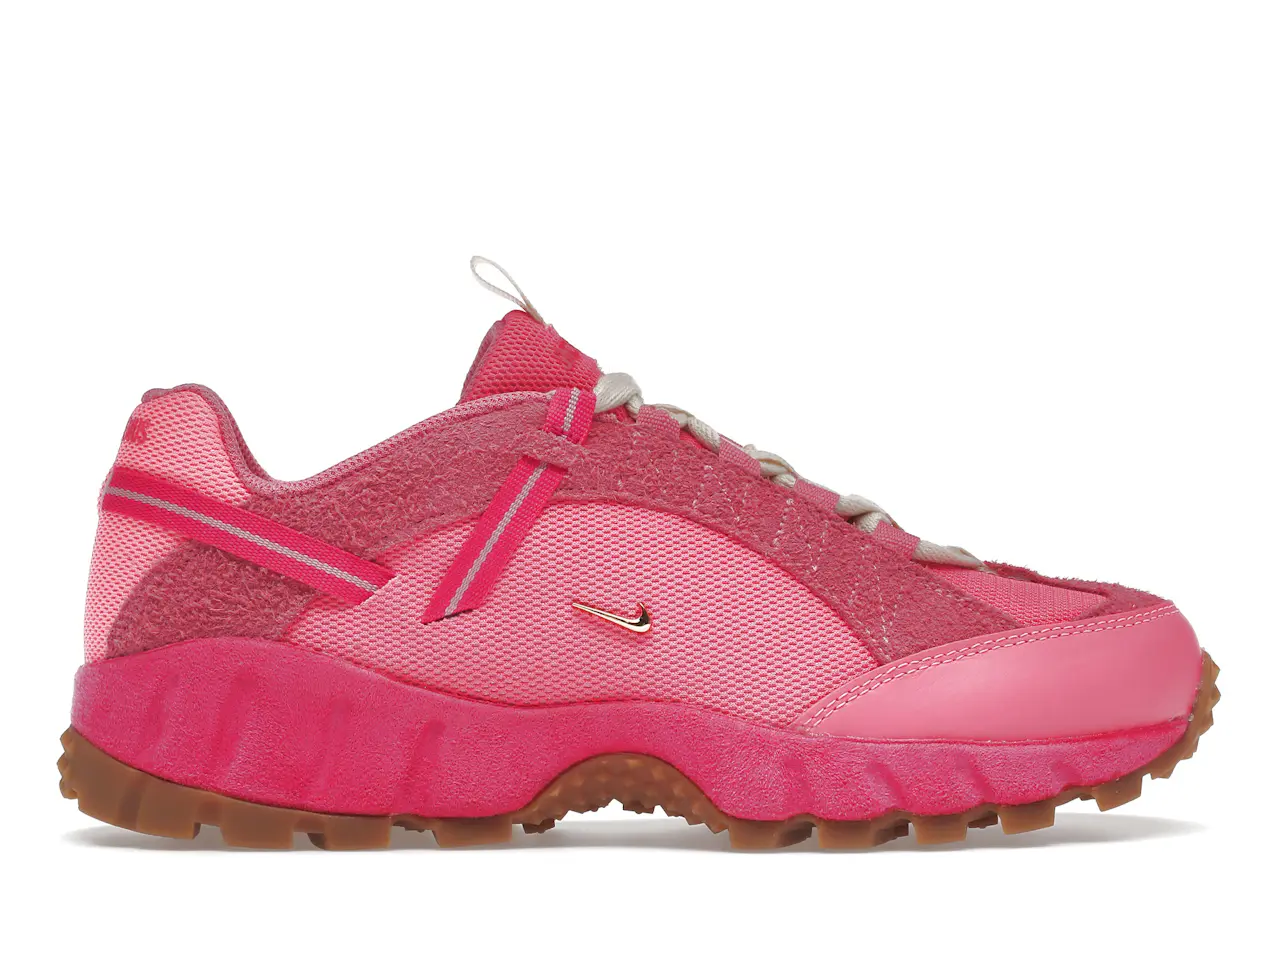 Nike Air Humara LX Jacquemus Pink Flash (Women's) - DX9999-600 - US